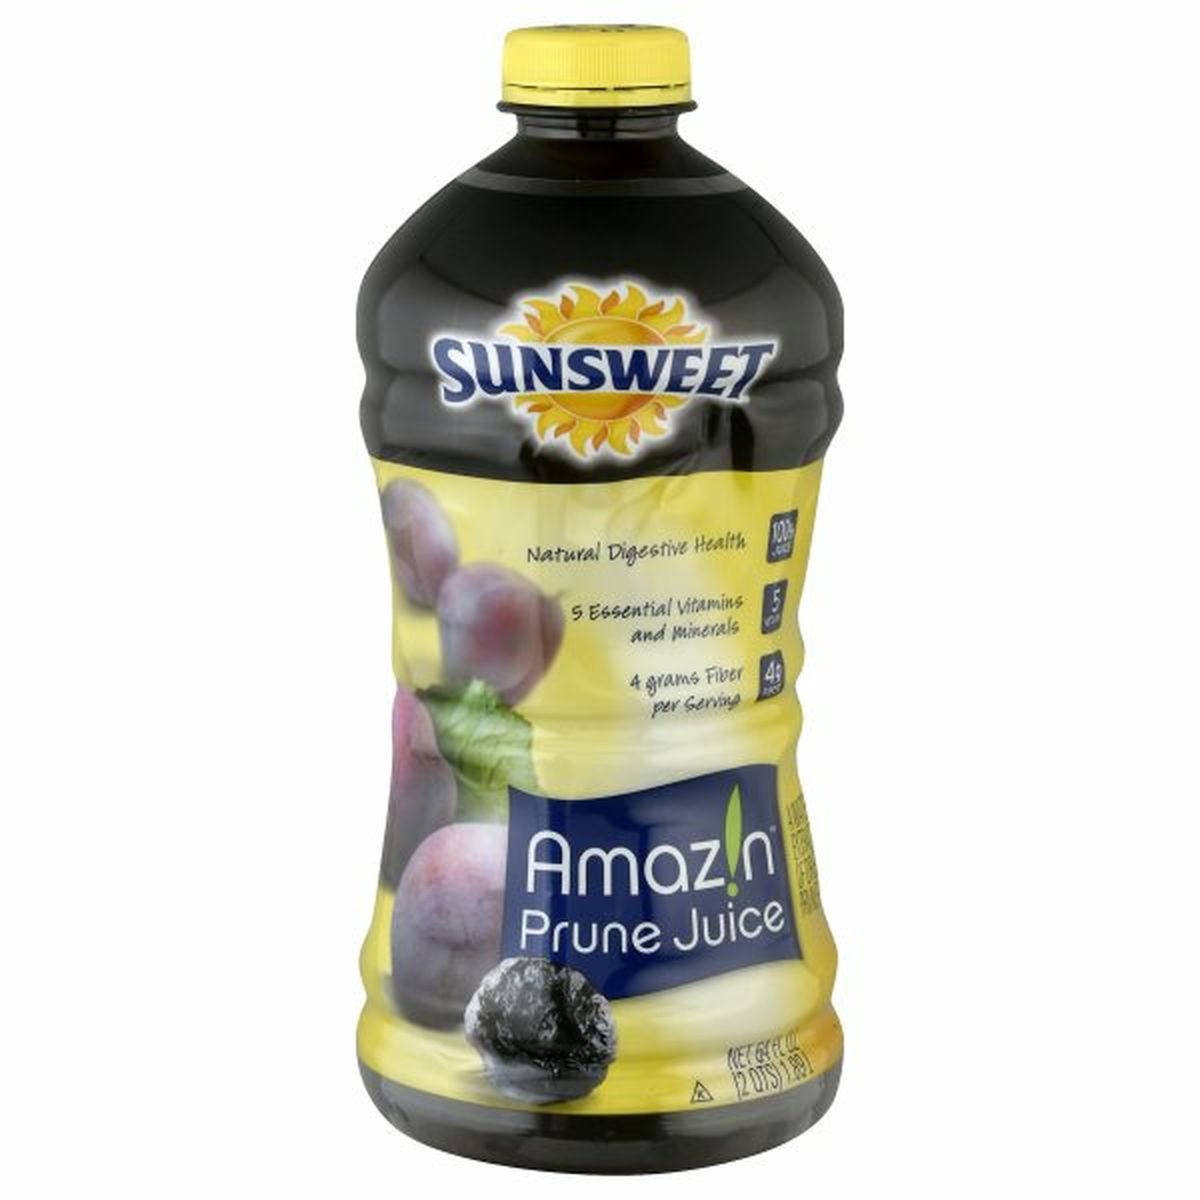 Calories in Sunsweet Amazin Juice, Prune